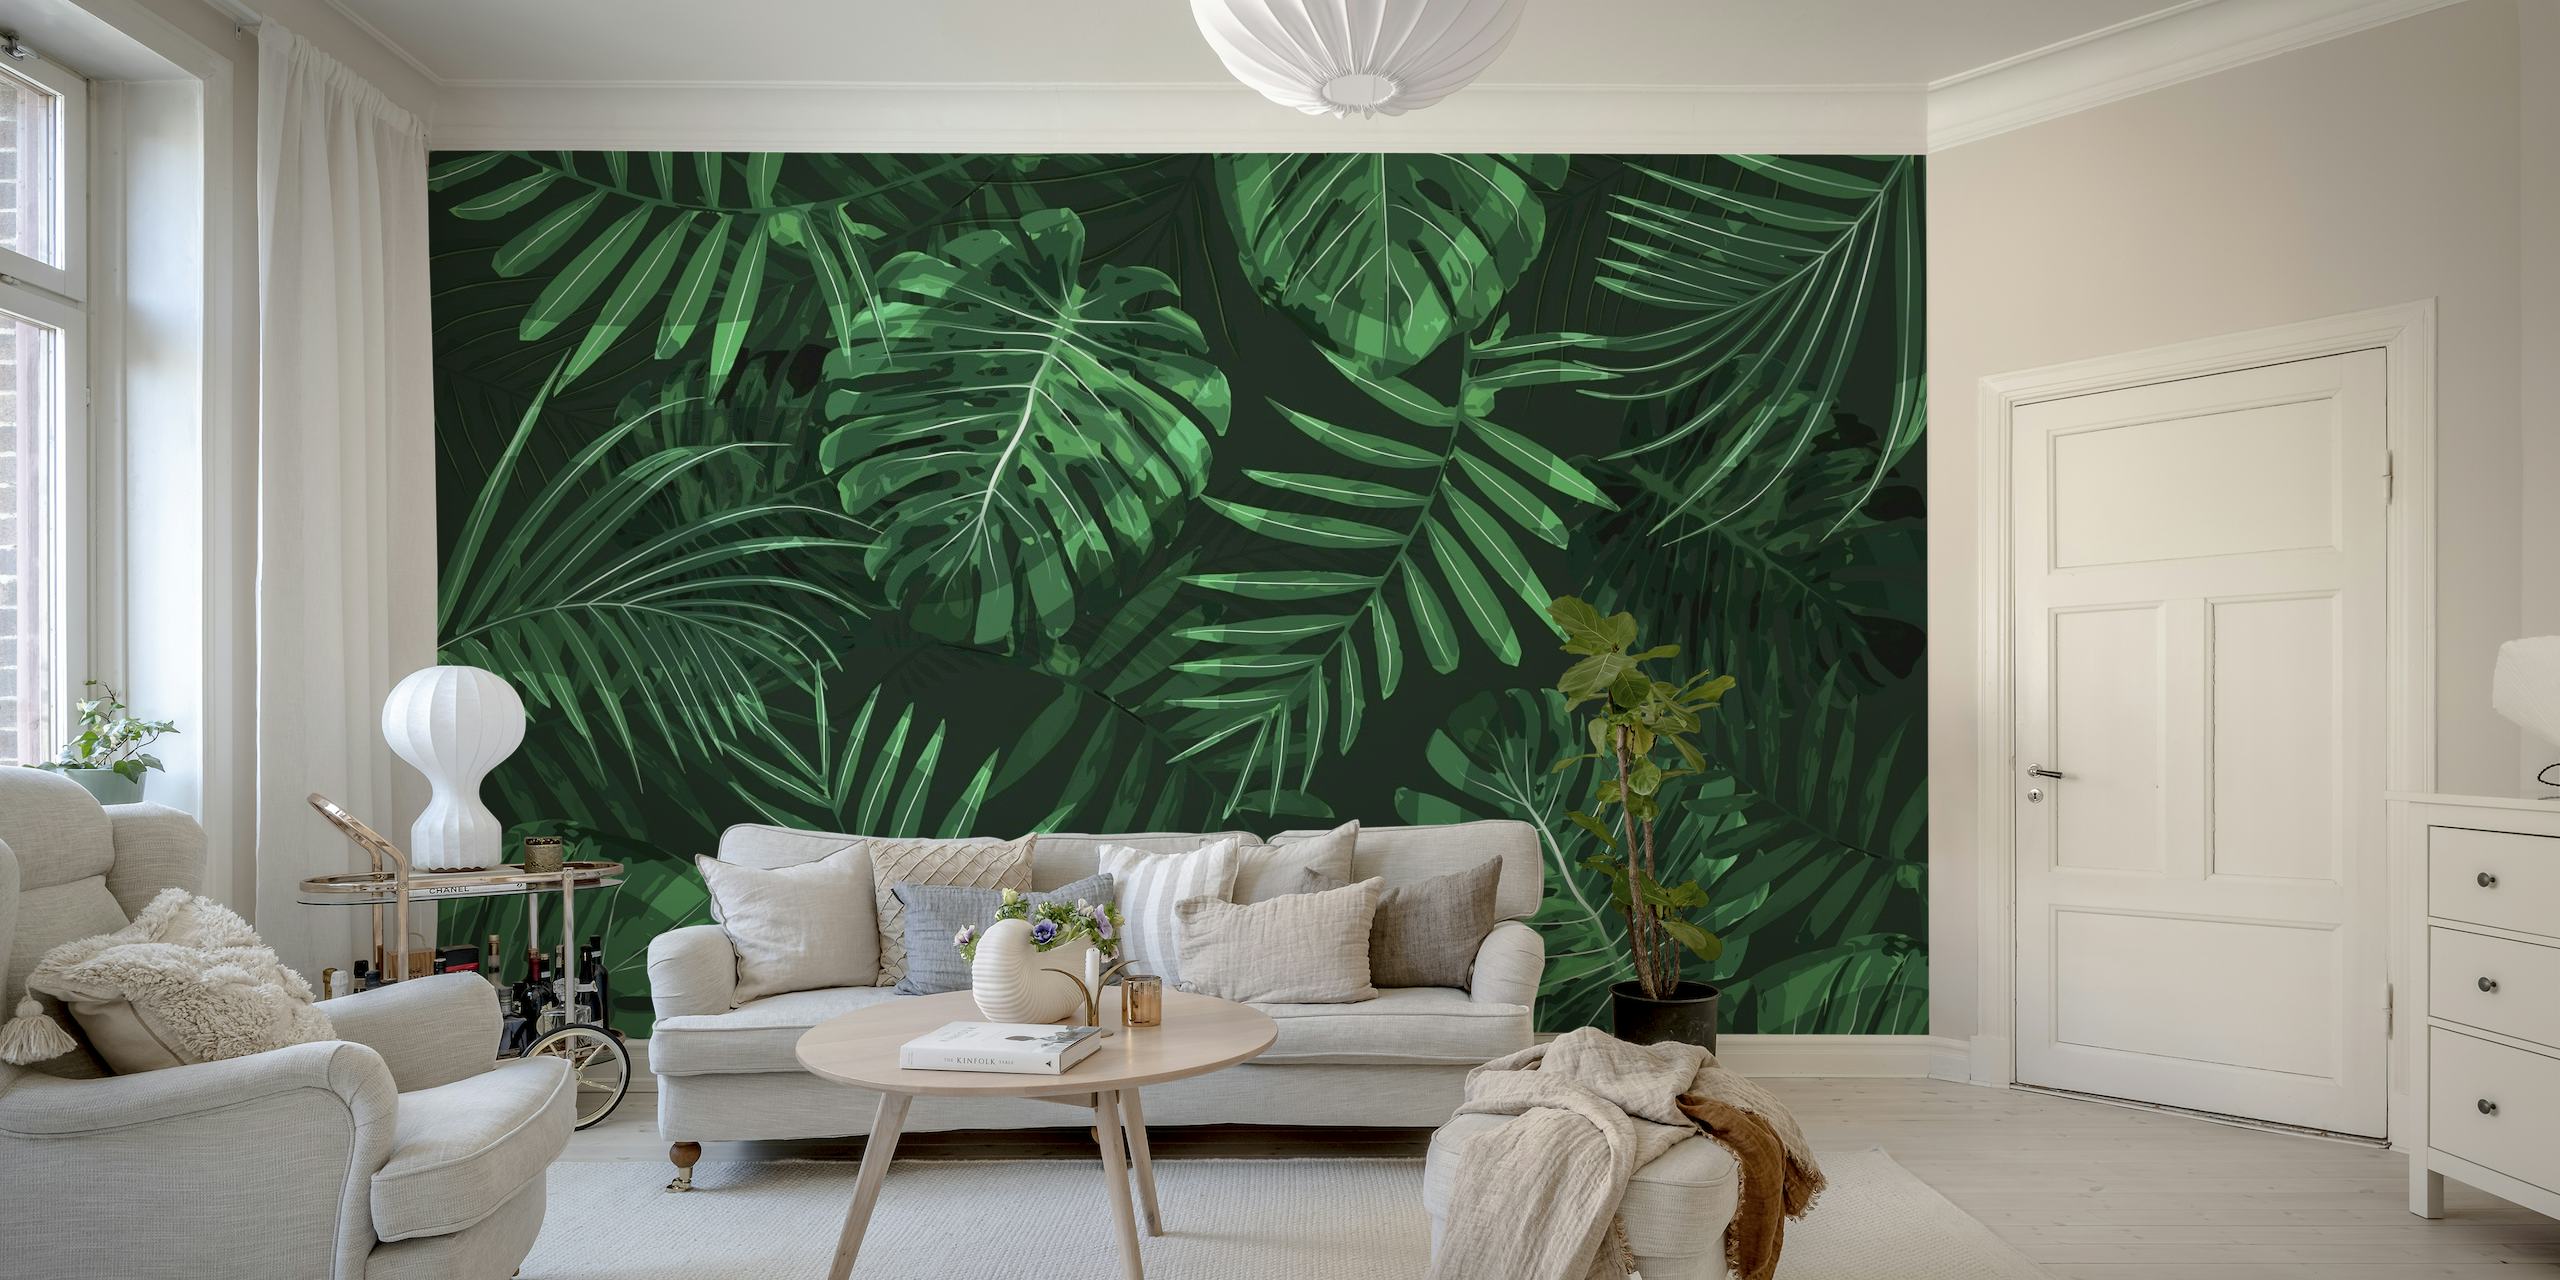 Groene Monstera en palmbladeren muurschildering op een donkere achtergrond.